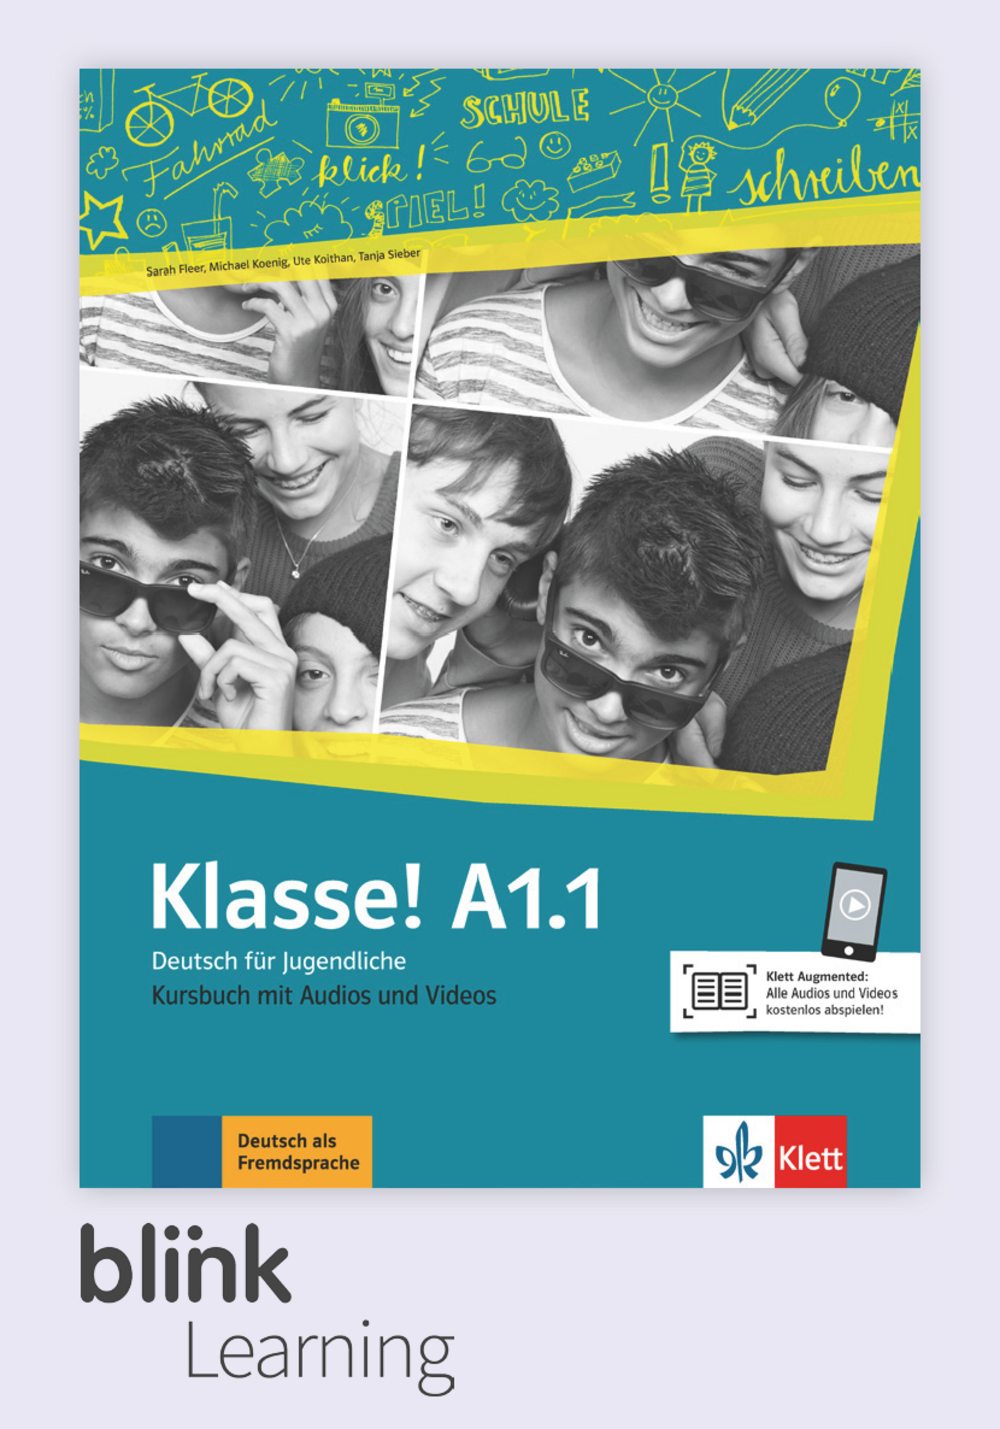 Klasse! A1.1 Digital Kursbuch fur Lernende / Цифровой учебник для ученика